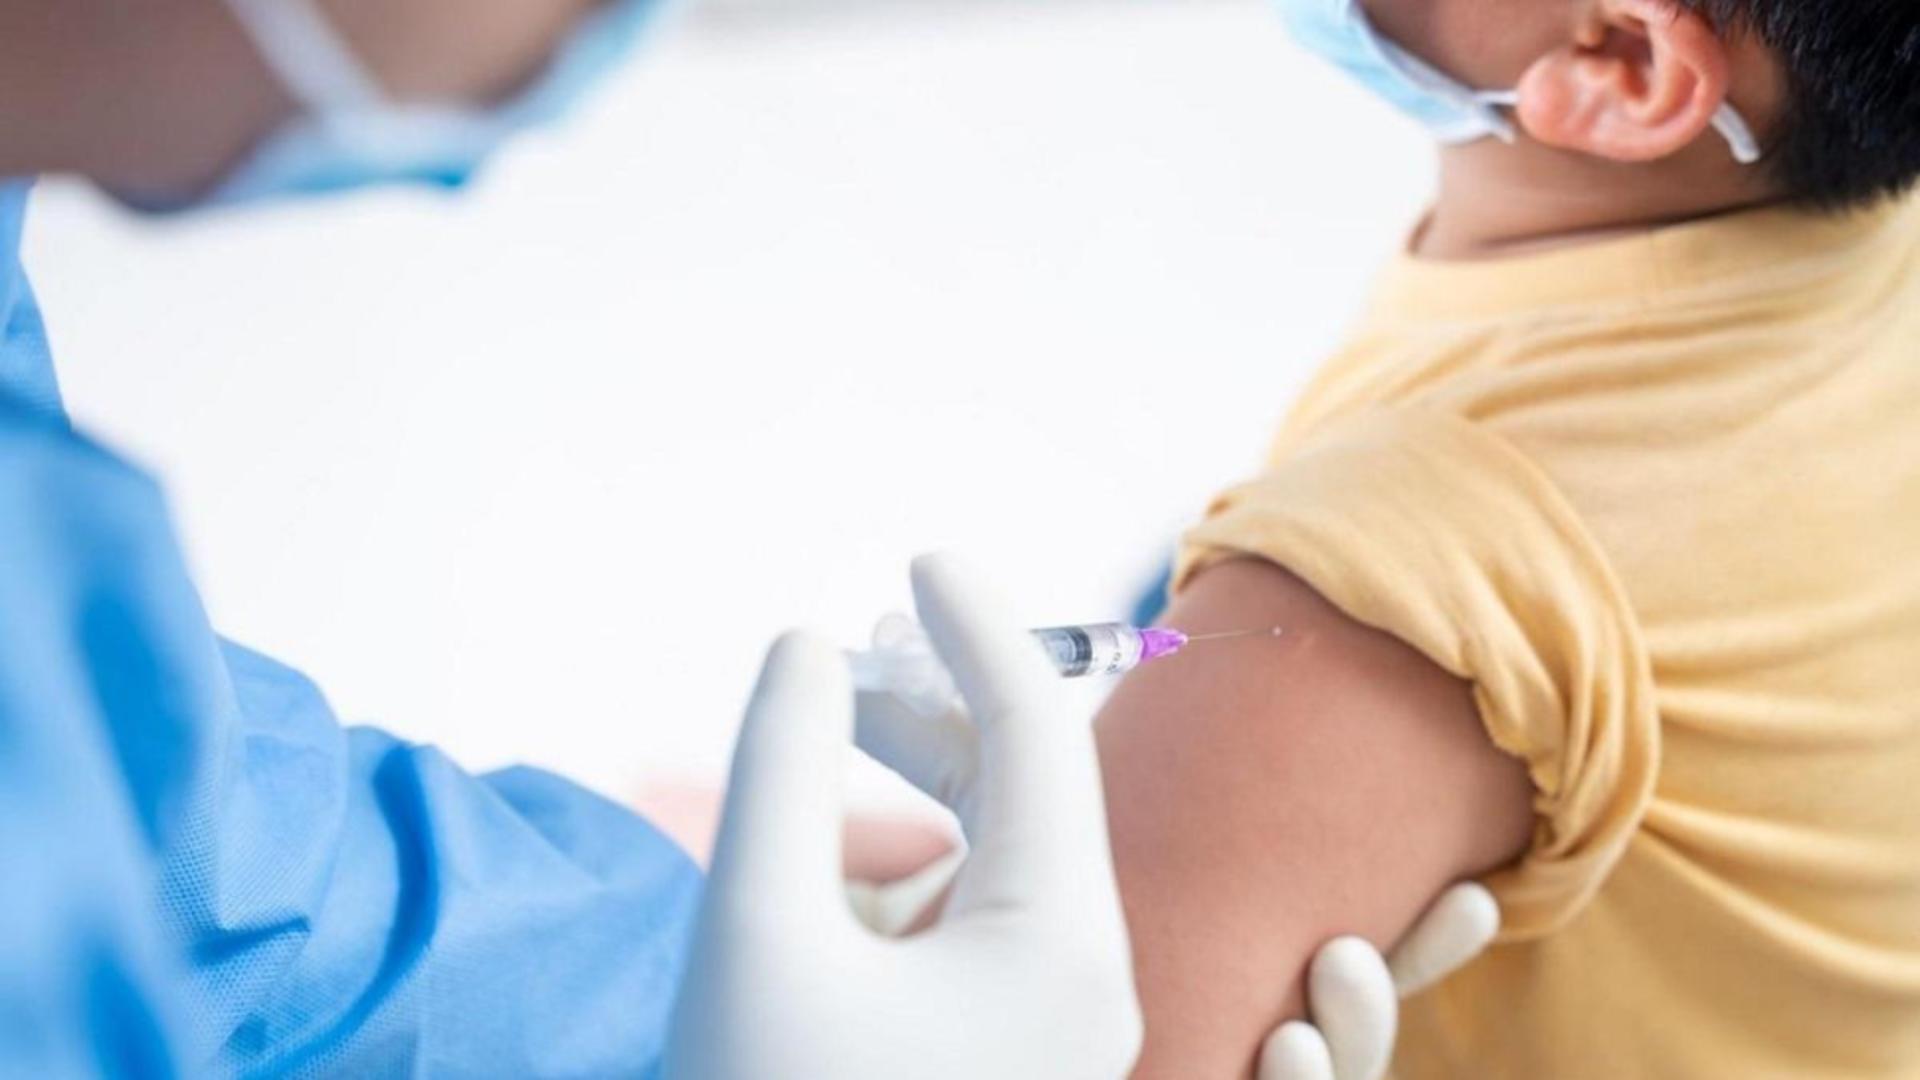 MII de români s-au vaccinat împotriva coronavirus în ultima săptămână - Câți copii au primit vaccinul. CIFRE oficiale